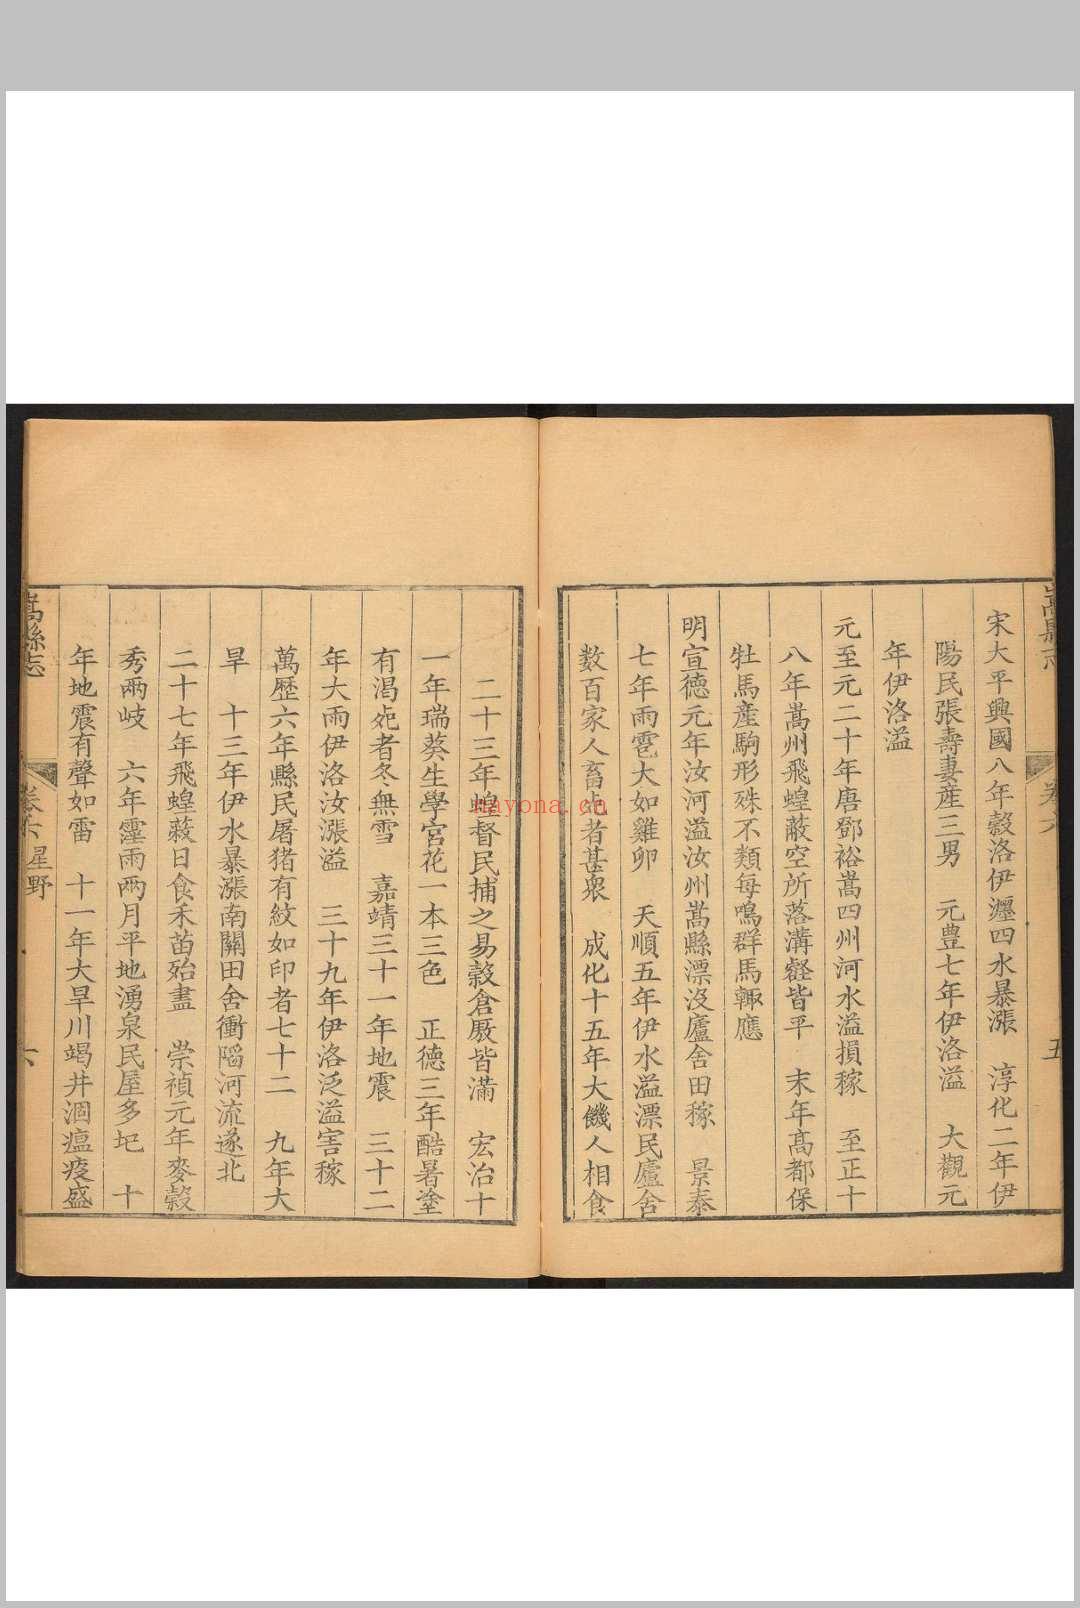 嵩县志  三十卷, 卷首一卷 康基渊纂修.清乾隆32年 [1767]